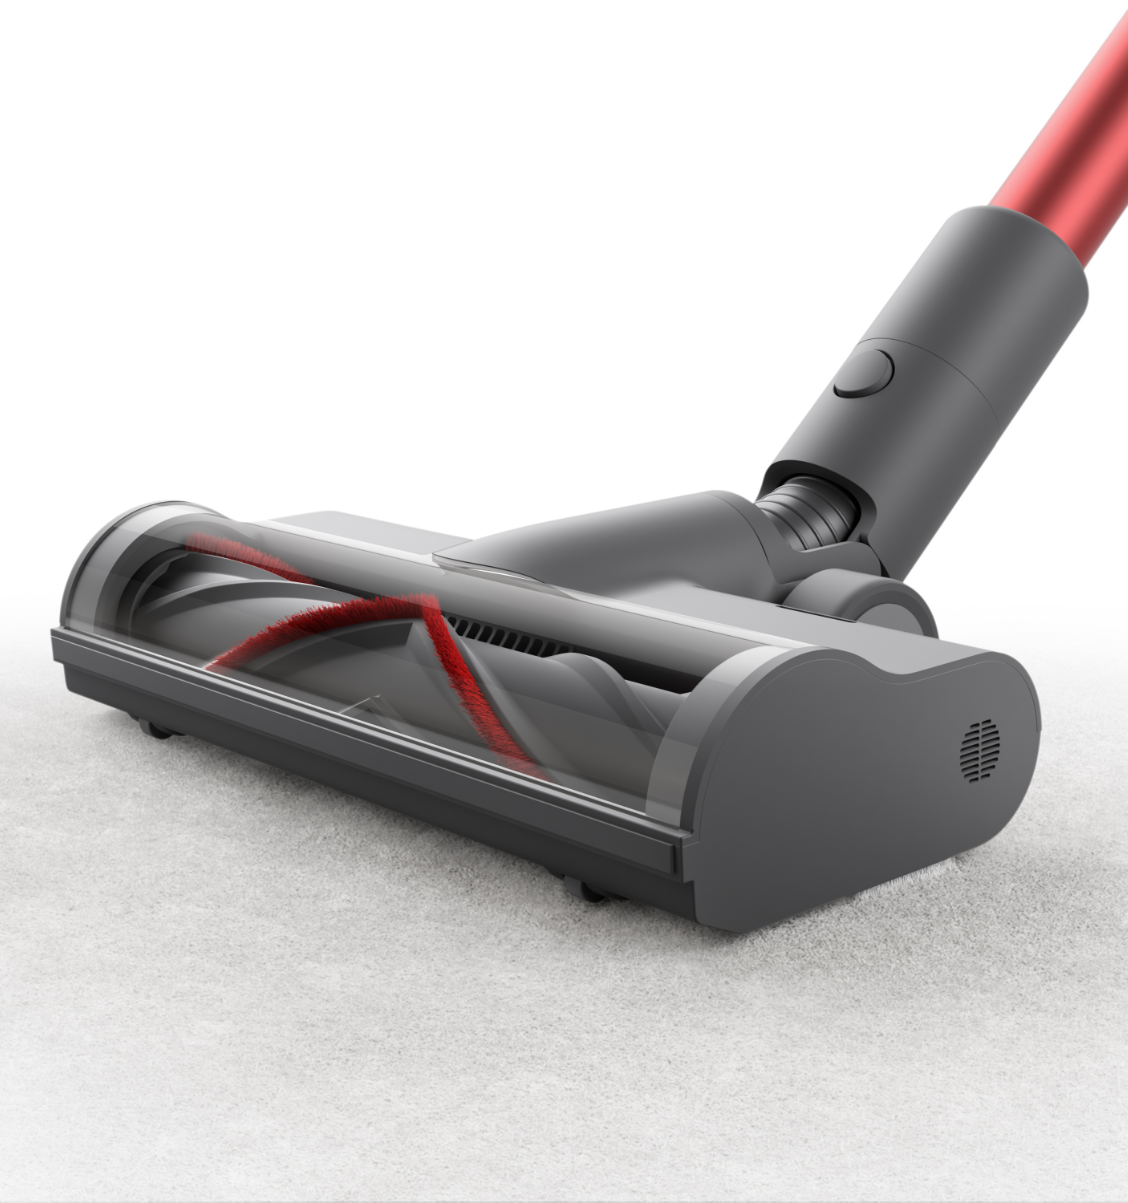 Dreametech T20 Cordless Stick Vacuum